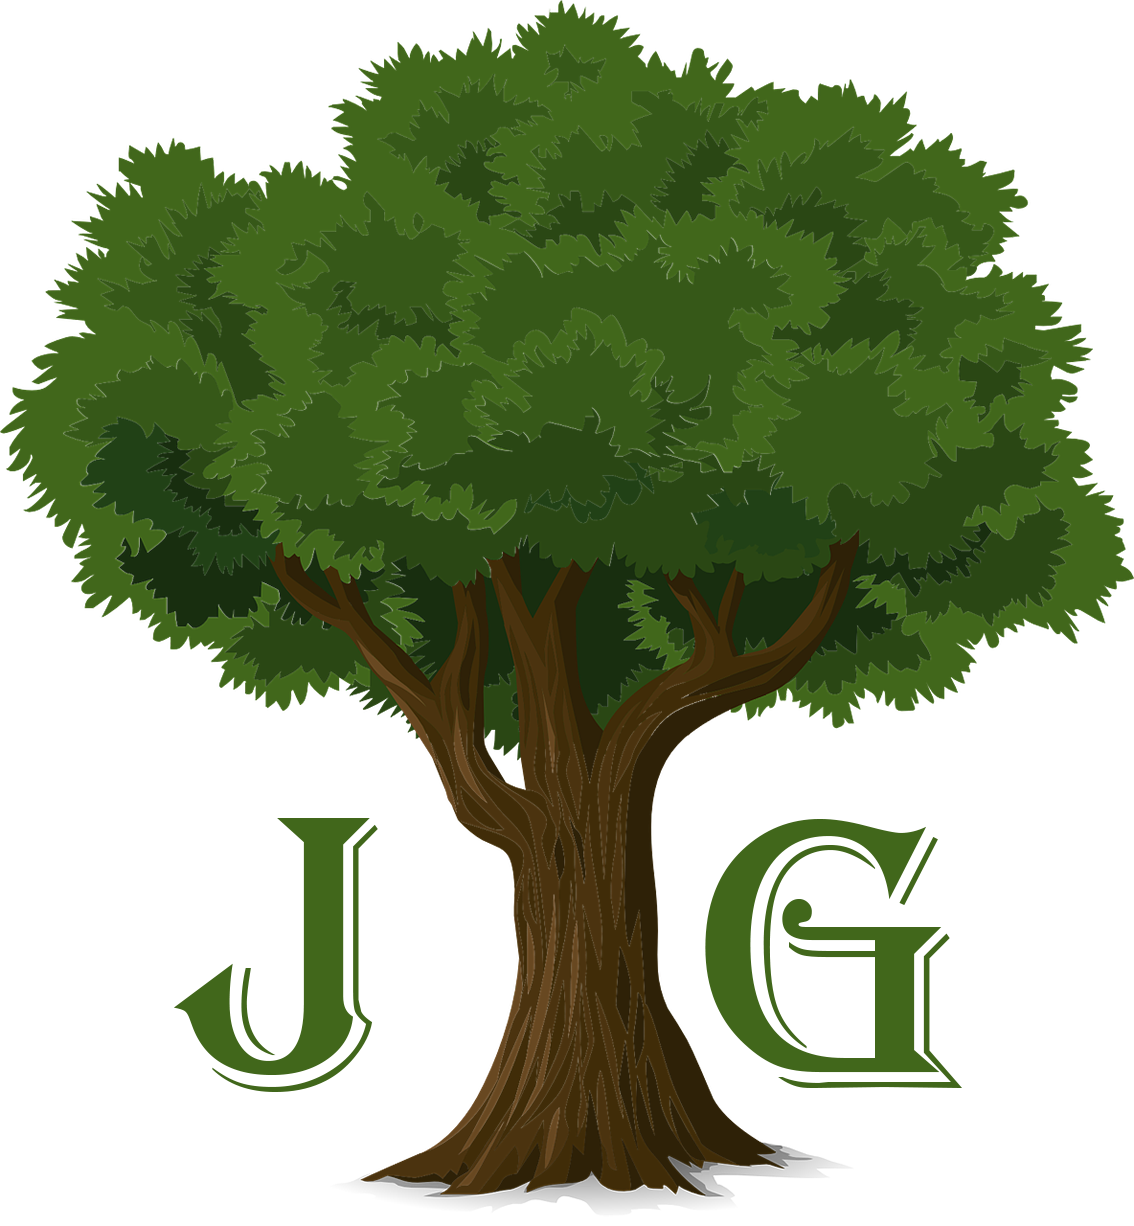 Johny Garden – projektowanie, wykonywanie oraz pielęgnacja ogrodów – Zajmuje się szeroko pojętym projektowaniem, wykonywaniem oraz pielęgnacją ogrodów. W razie potrzeby doradzimy w zakresie optymalnego zagospodarowania posiadanych terenów zielonych. Działamy profesjonalnie i z pasją, korzystając ze specjalistycznego sprzętu.